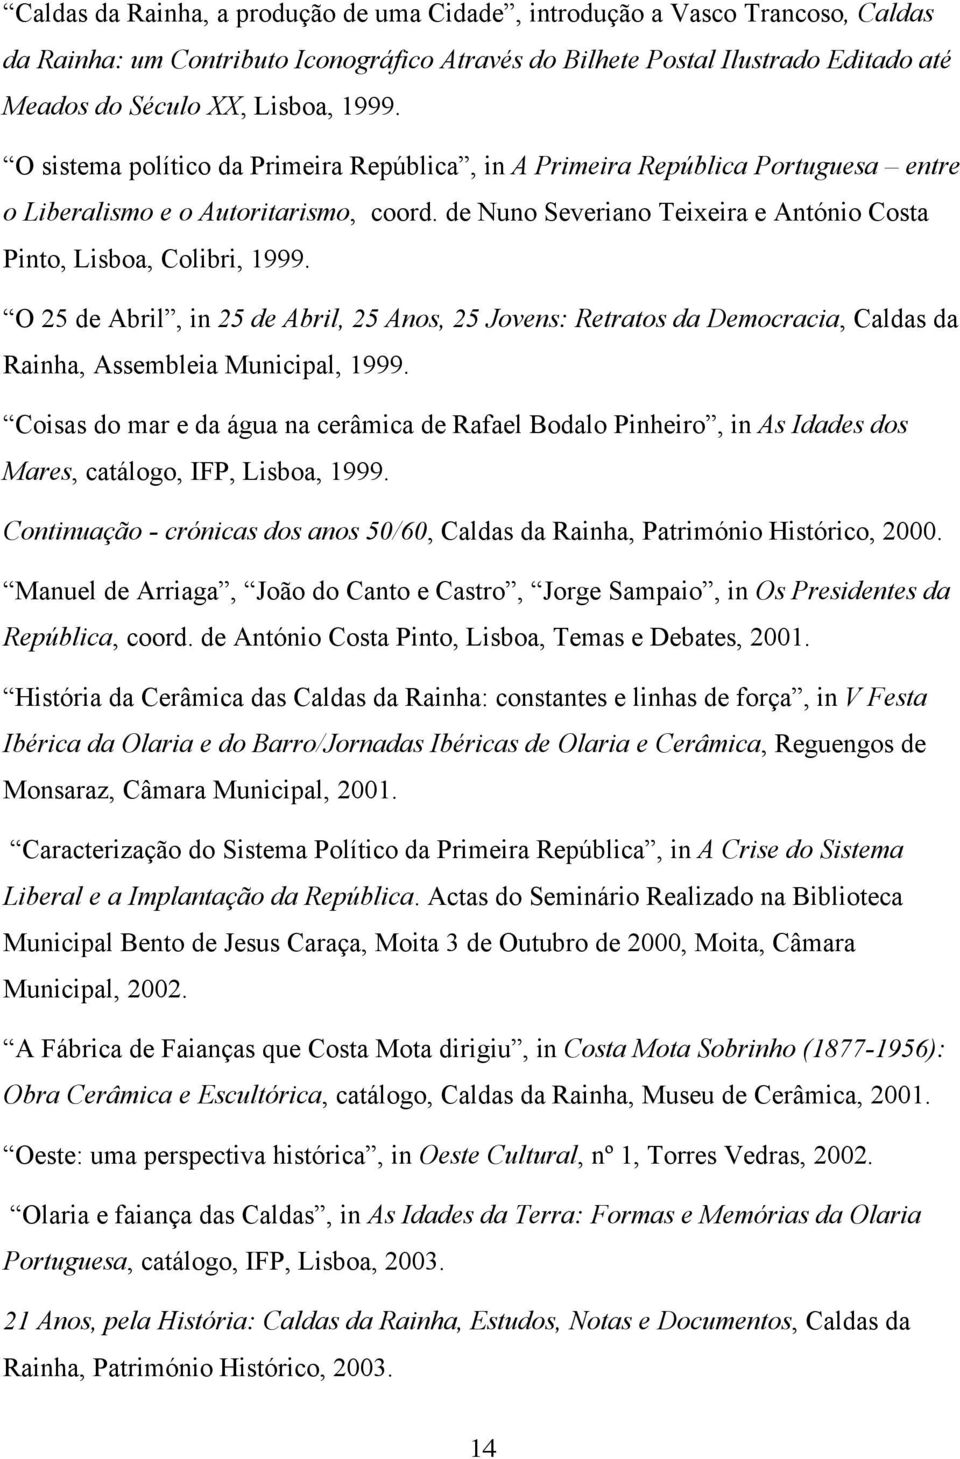 O 25 de Abril, in 25 de Abril, 25 Anos, 25 Jovens: Retratos da Democracia, Caldas da Rainha, Assembleia Municipal, 1999.